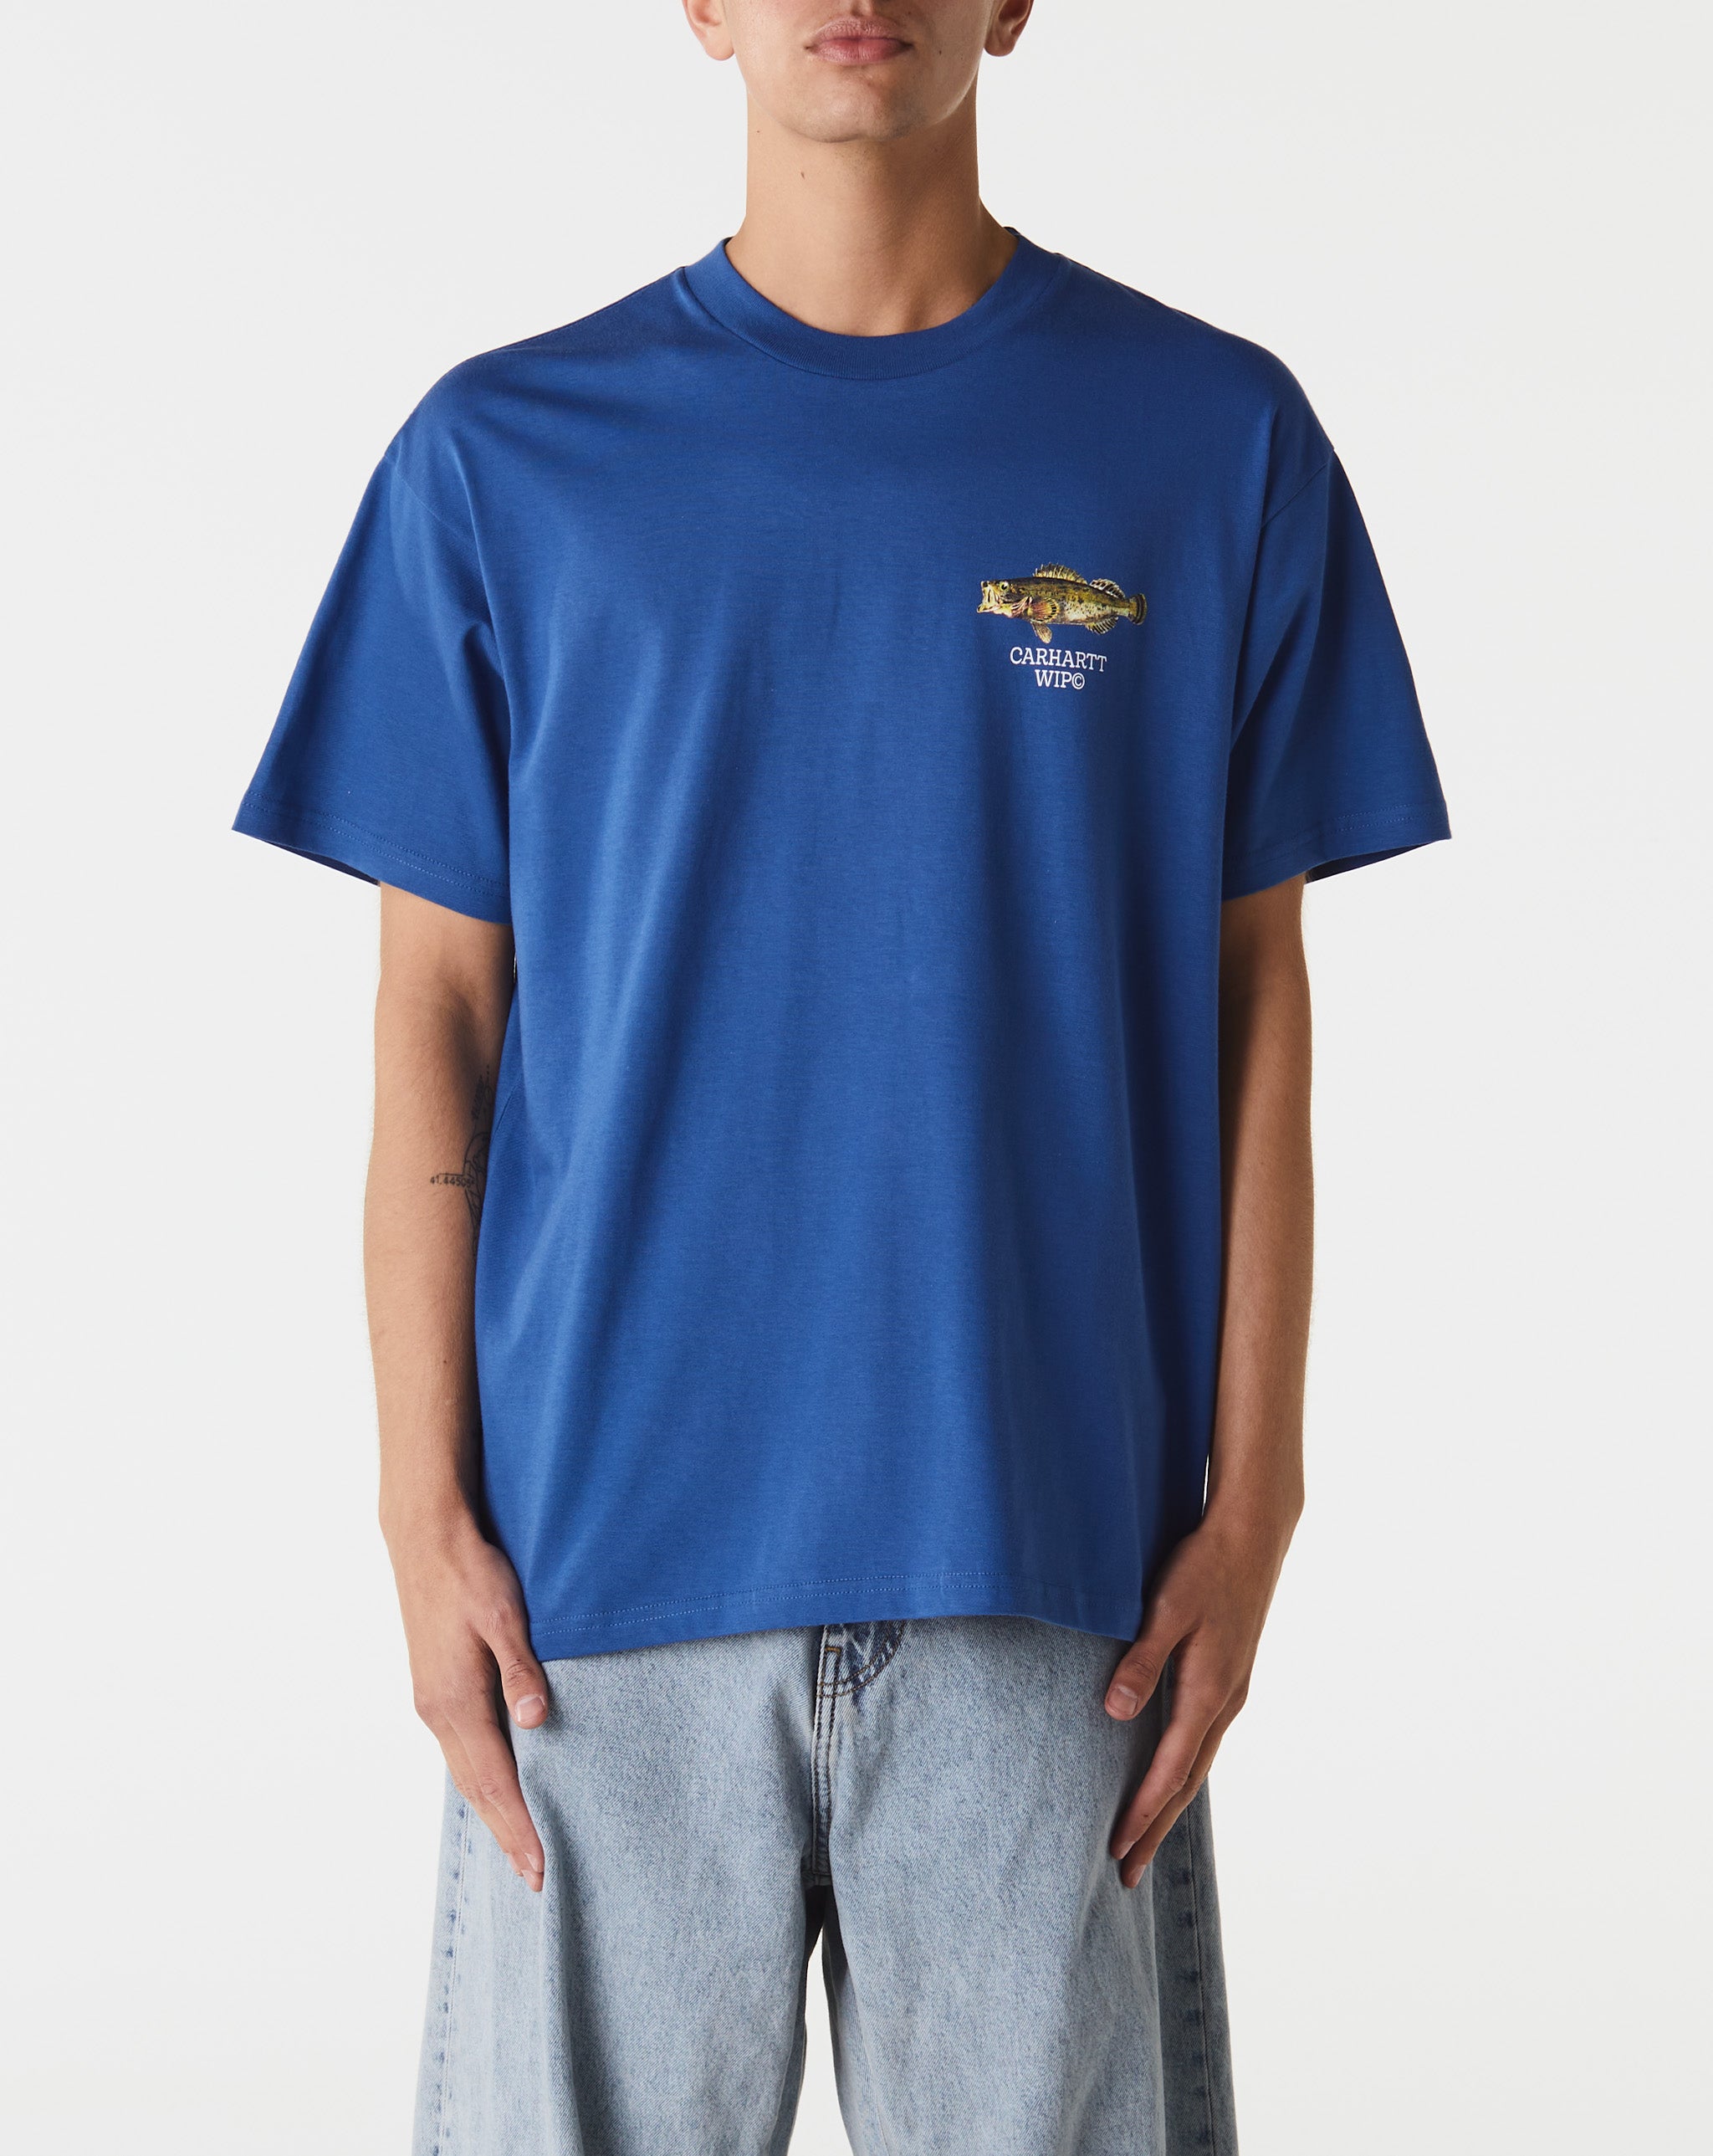 Carhartt WIP Fish T-Shirt  - Cheap Cerbe Jordan outlet